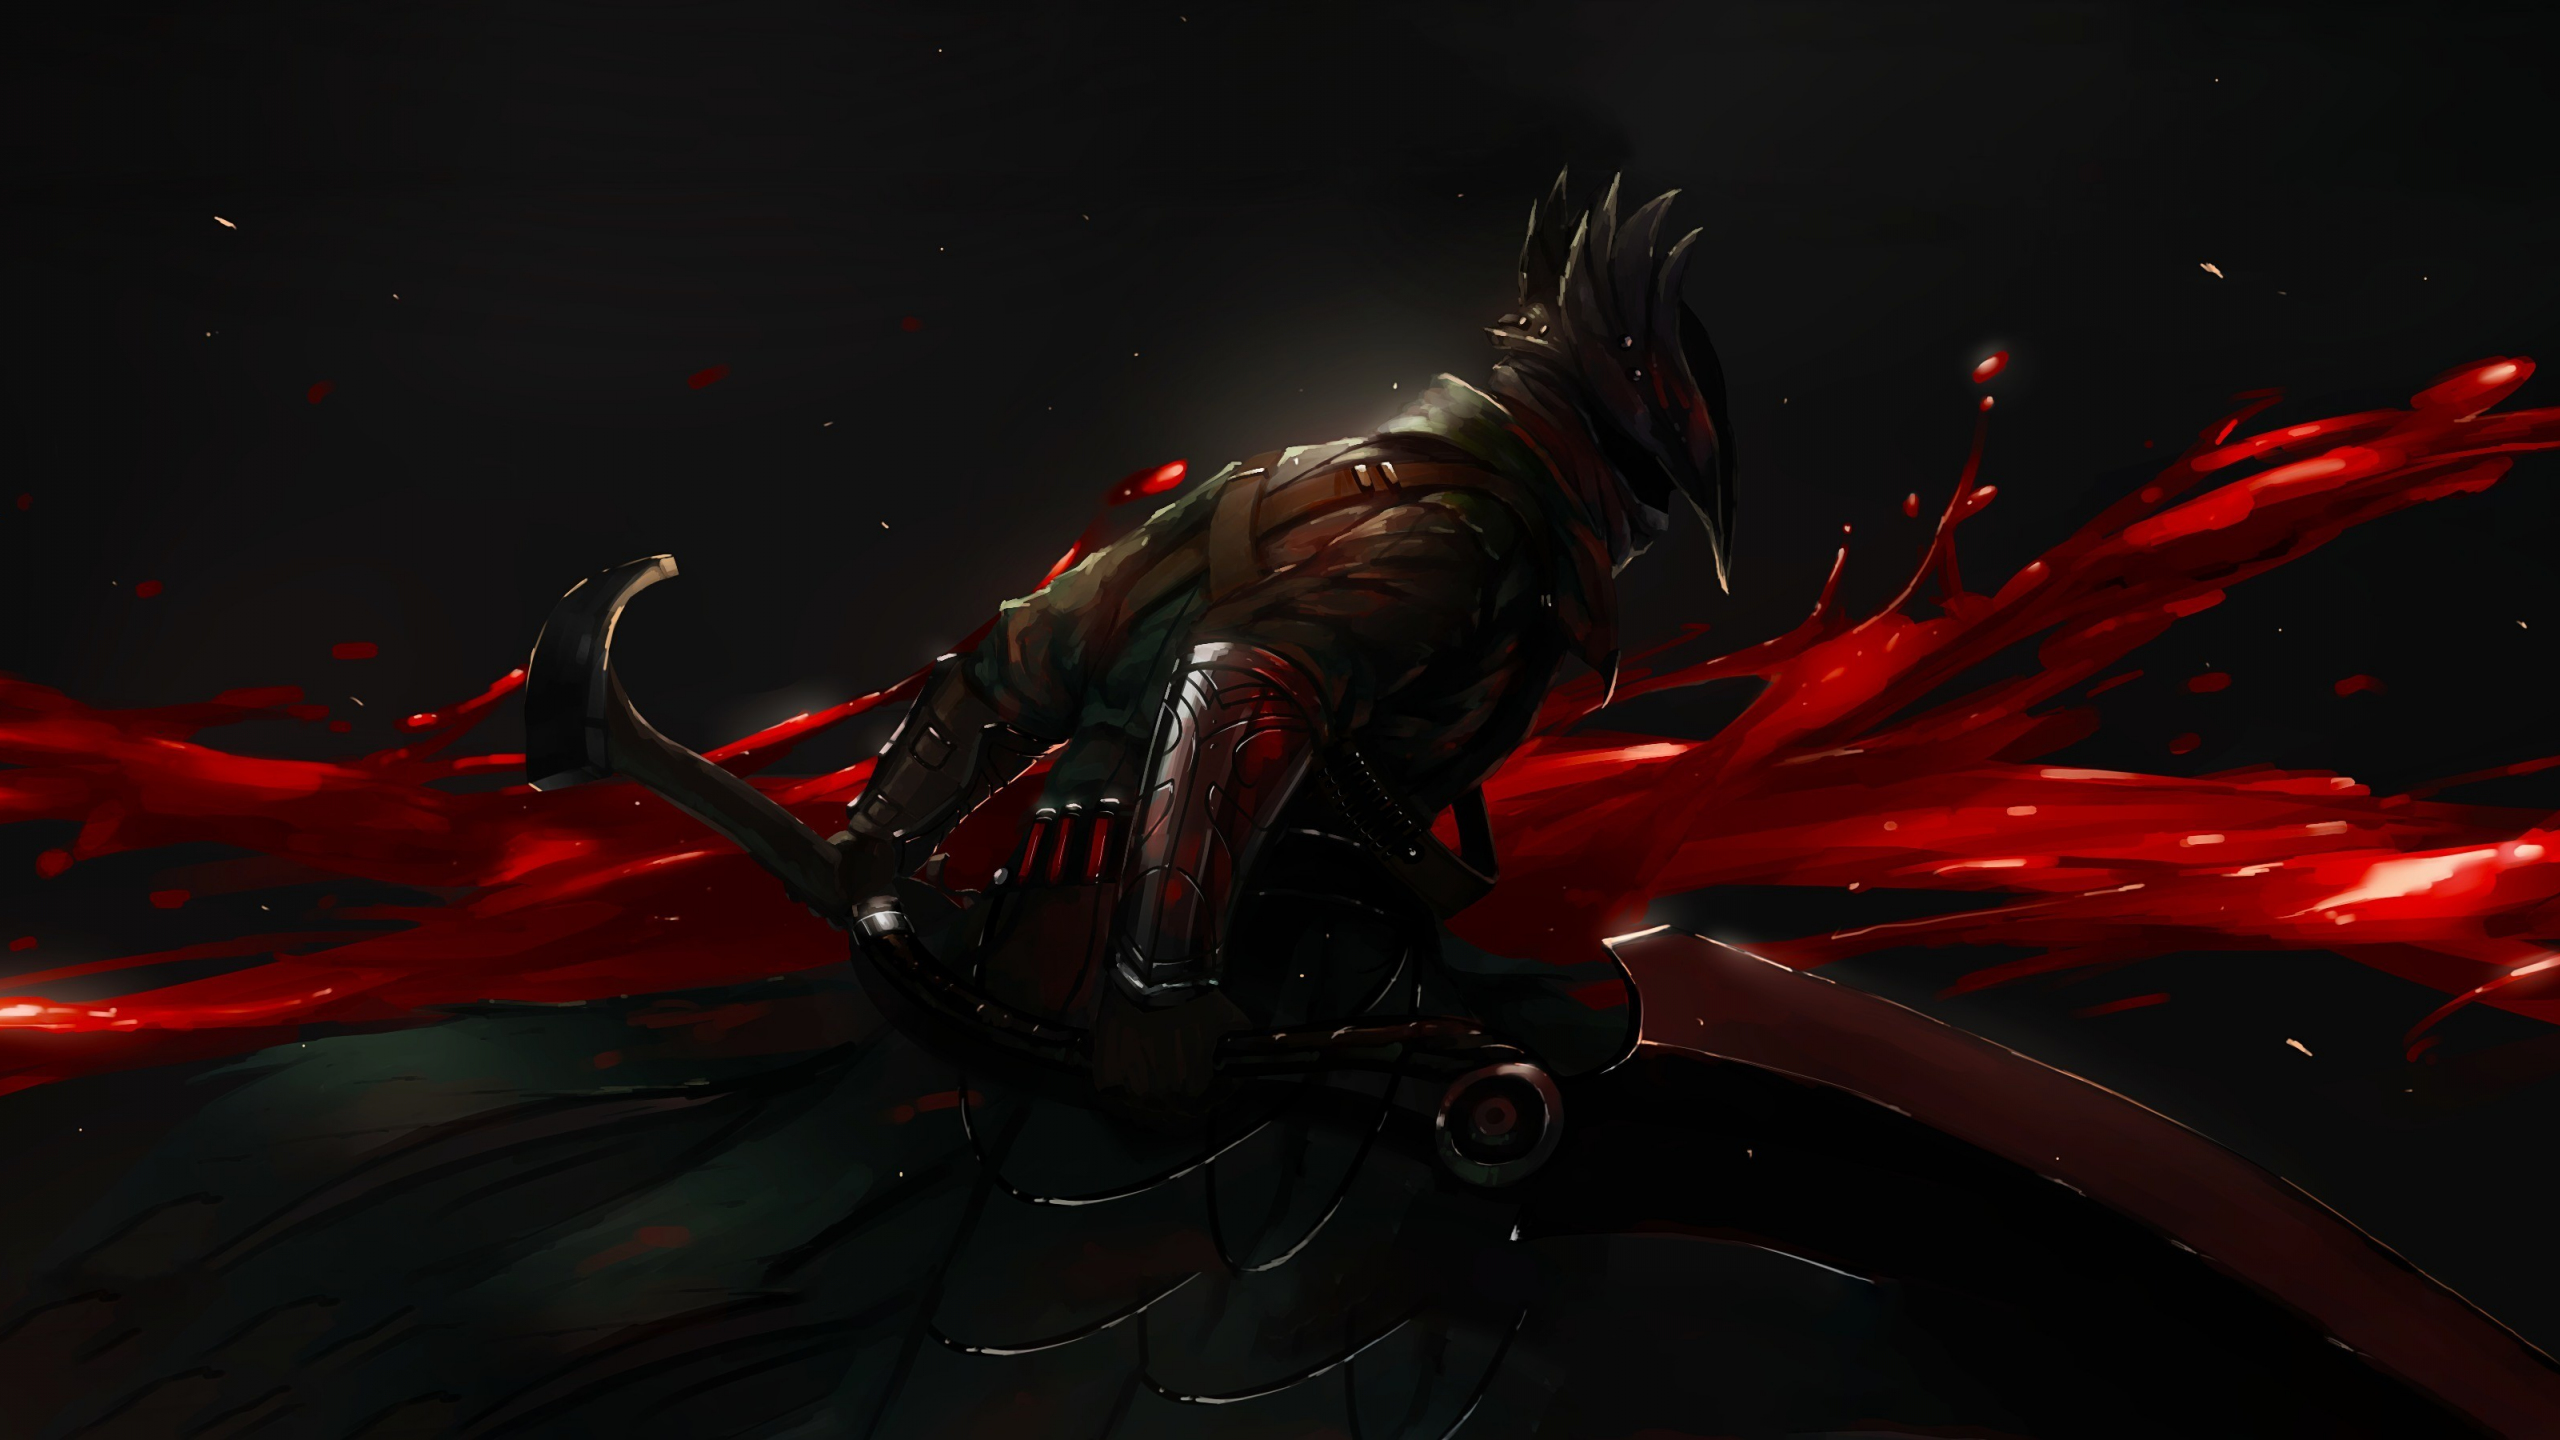 Desktop Wallpaper Dark Warrior Bloodborne Hd Image Picture Background D960b2